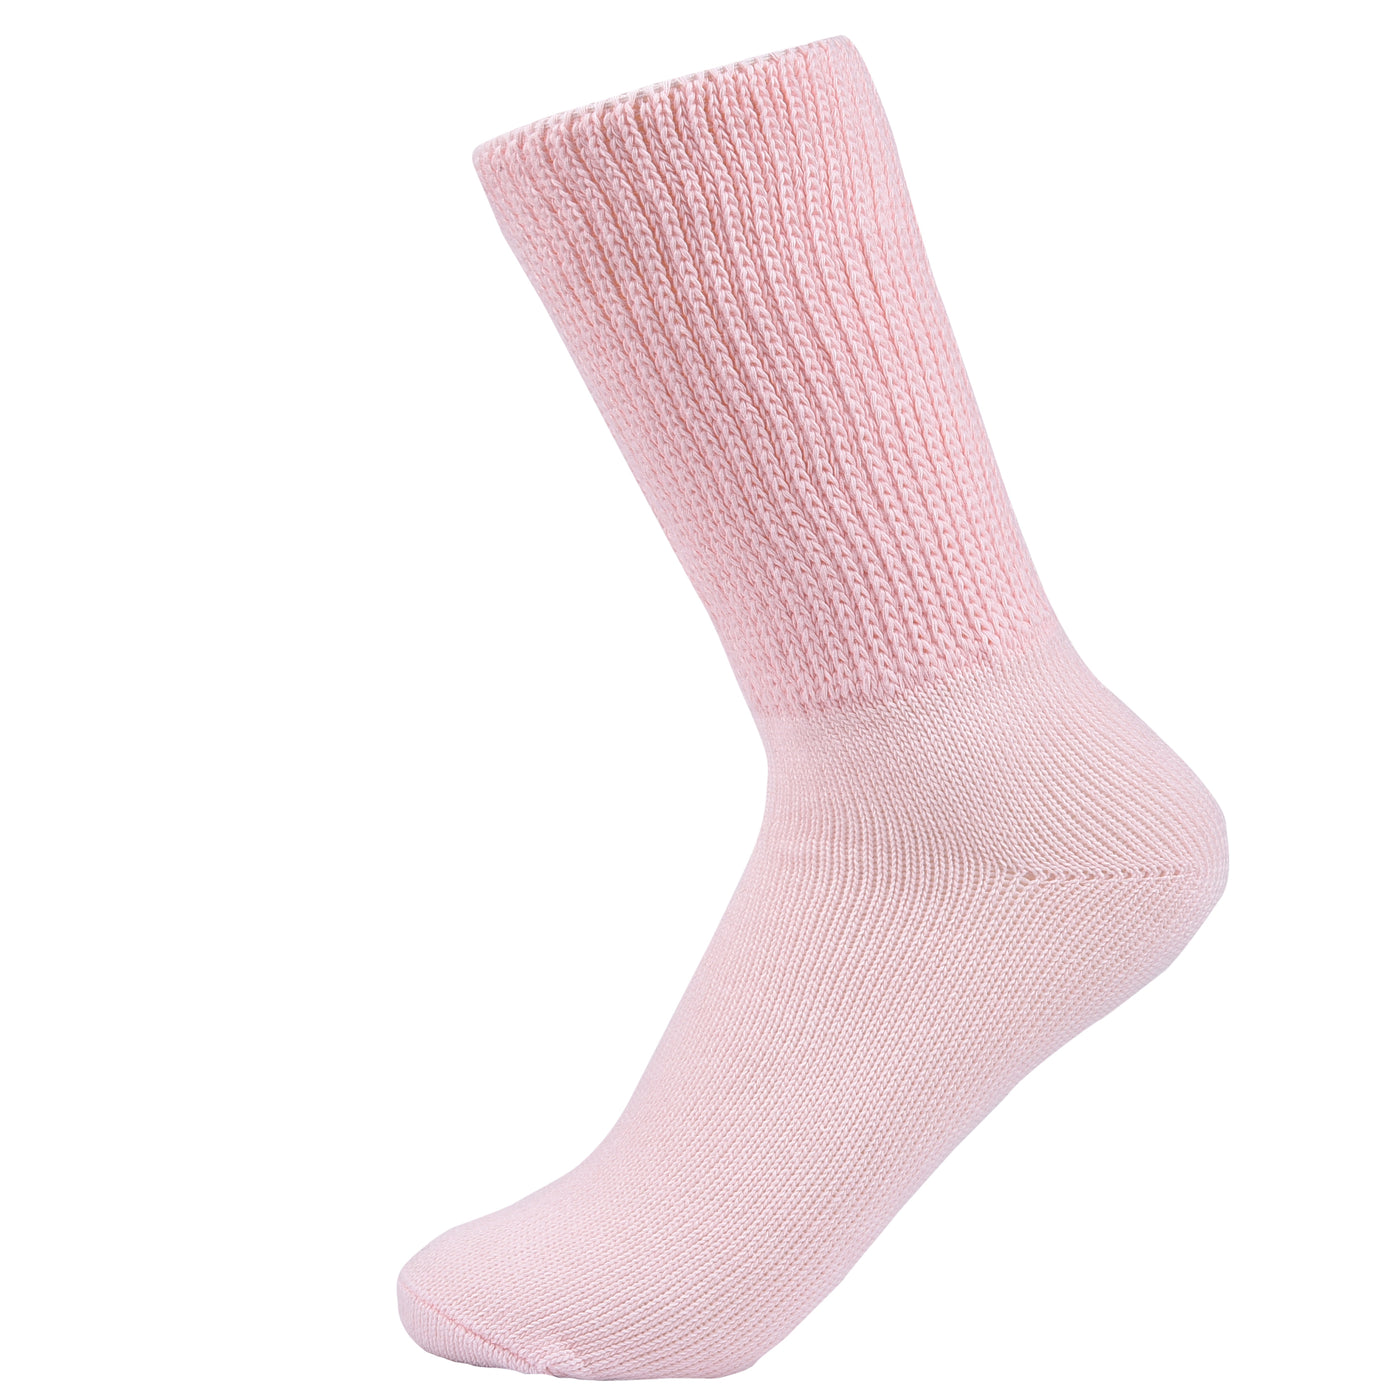 Laulax 3 pares de calcetines de algodón para diabéticos con agarre suave y parte superior suelta, talla UK 4-7 / Europa 36-41, 2 diseños 